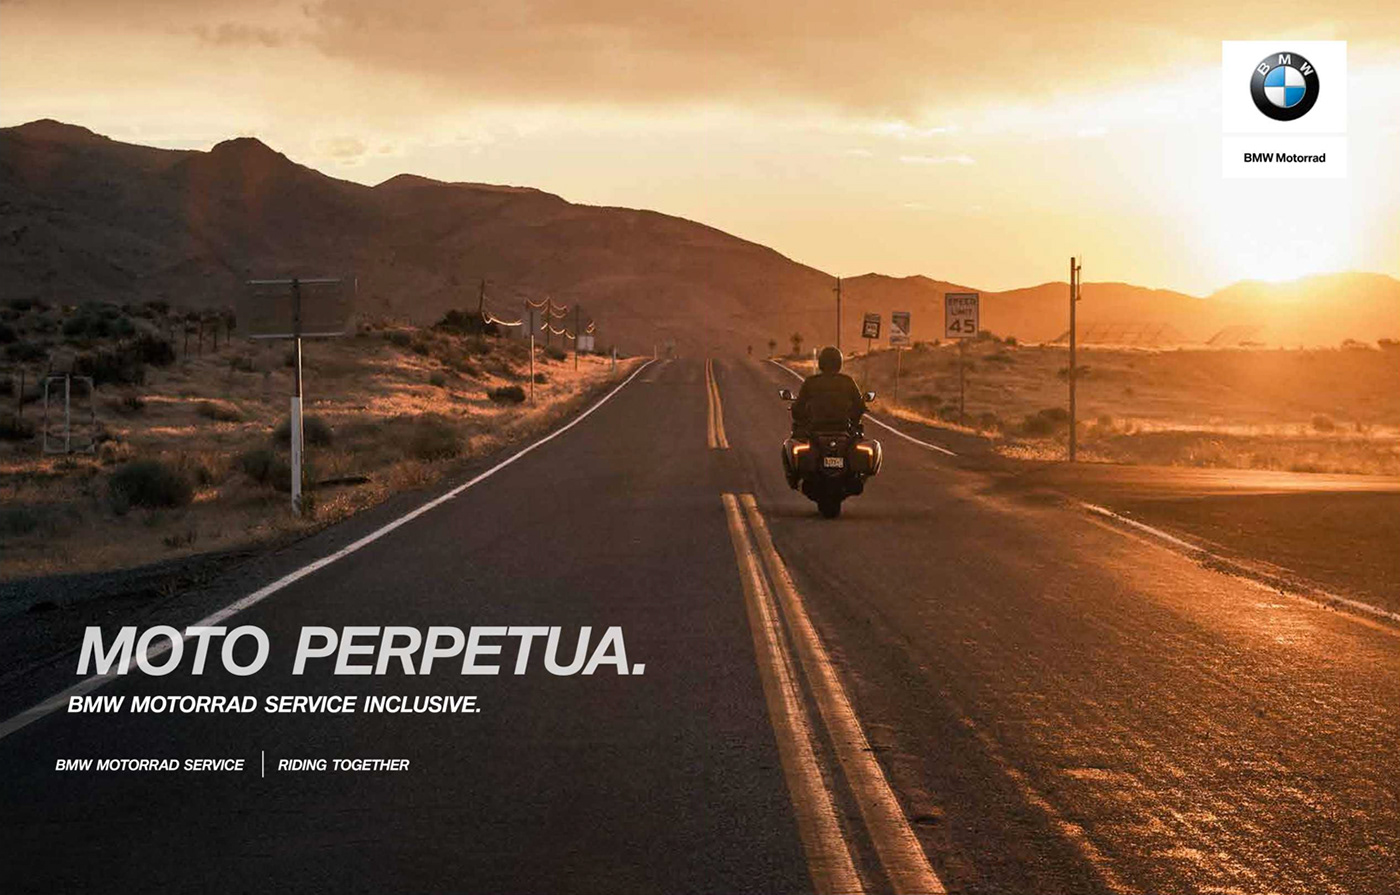 BMW Motorrad motorcycle rider moto service print pos copywriting  M&C Saatchi Advertising 